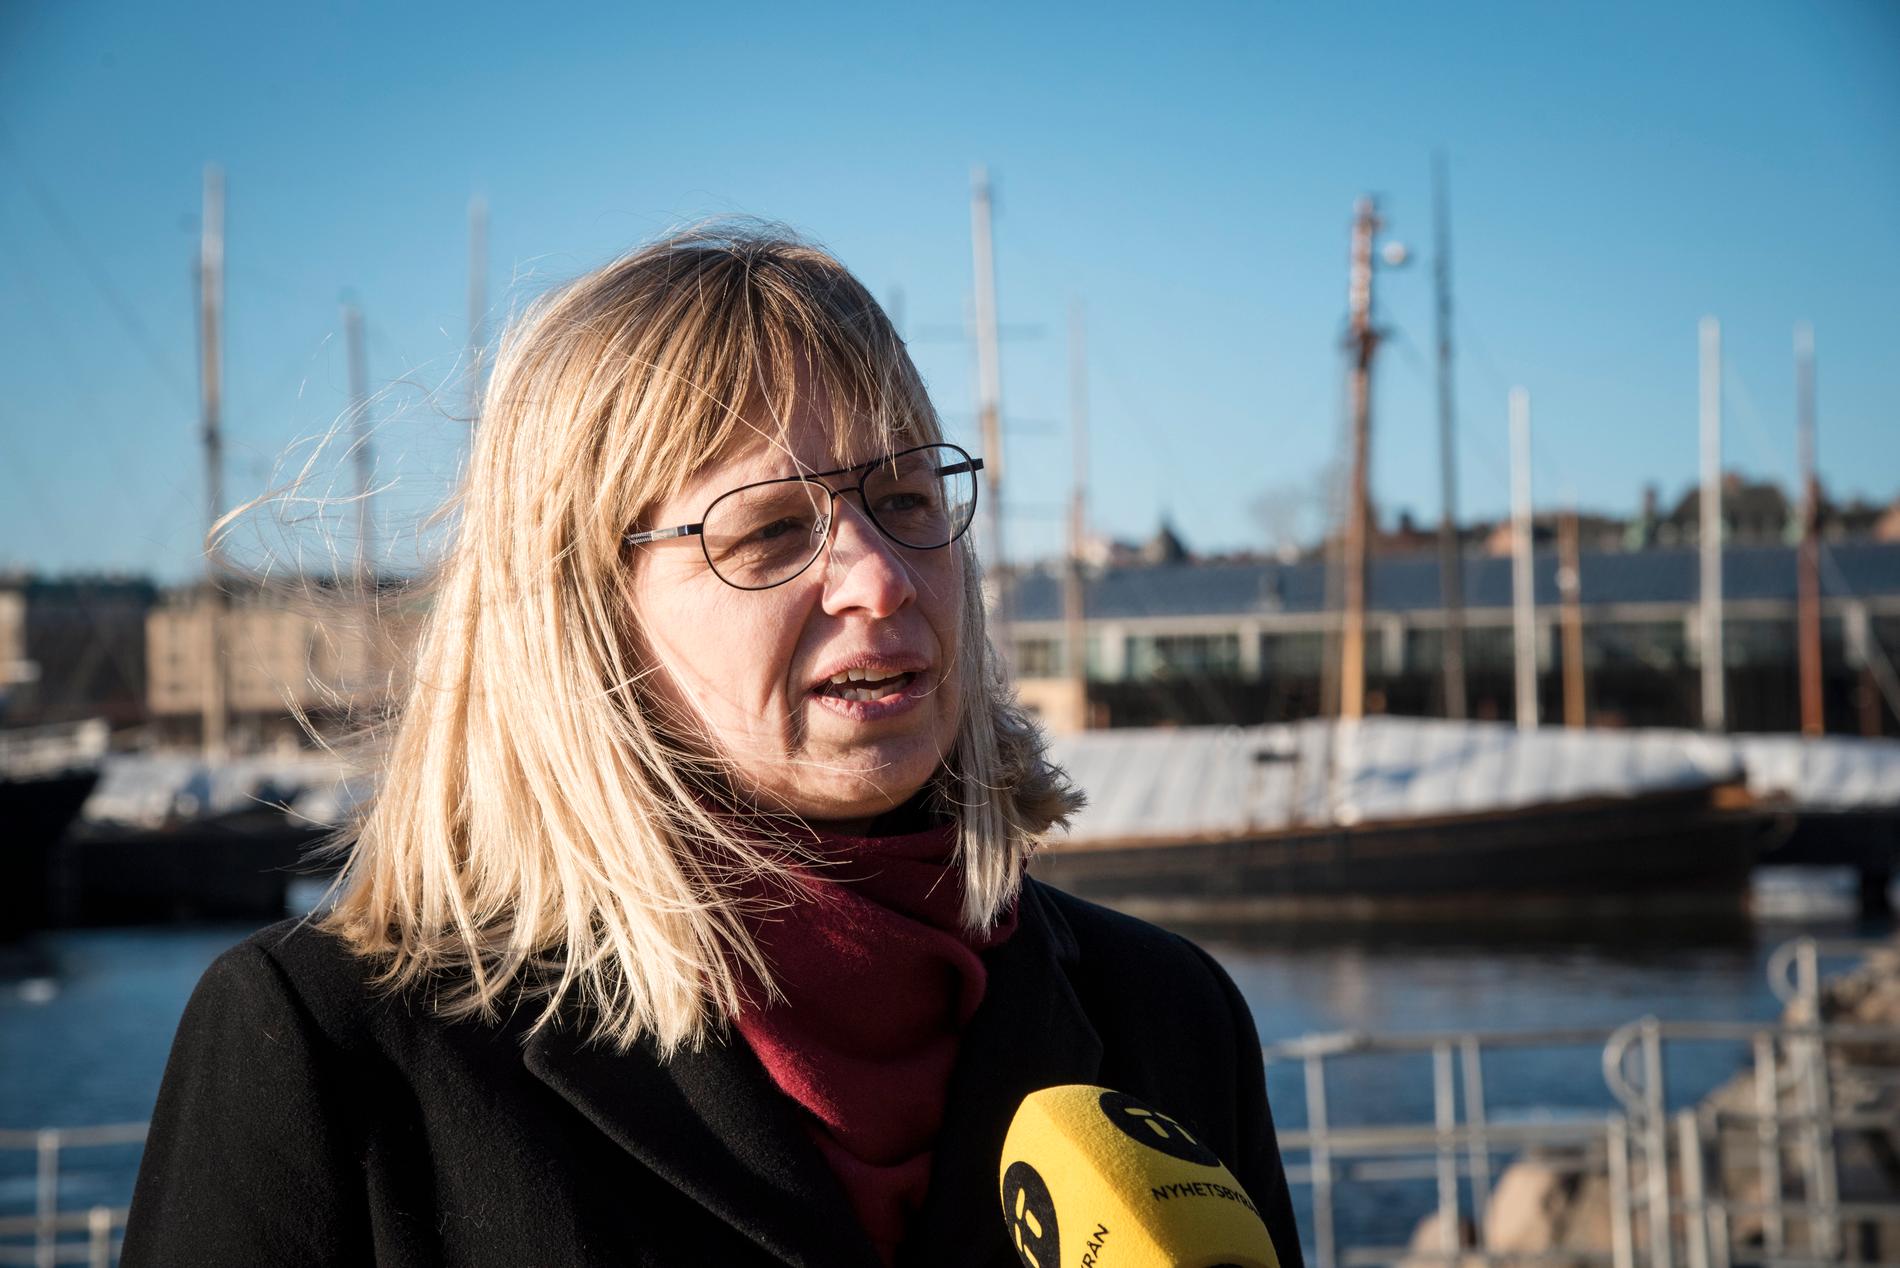 Ombyggnationen av Södertälje kanal och sluss försenas i två år. Enligt Sjöfartsverkets generaldirektör Katarina Norén har entreprenörens arbetsmetoder inte fungerat.